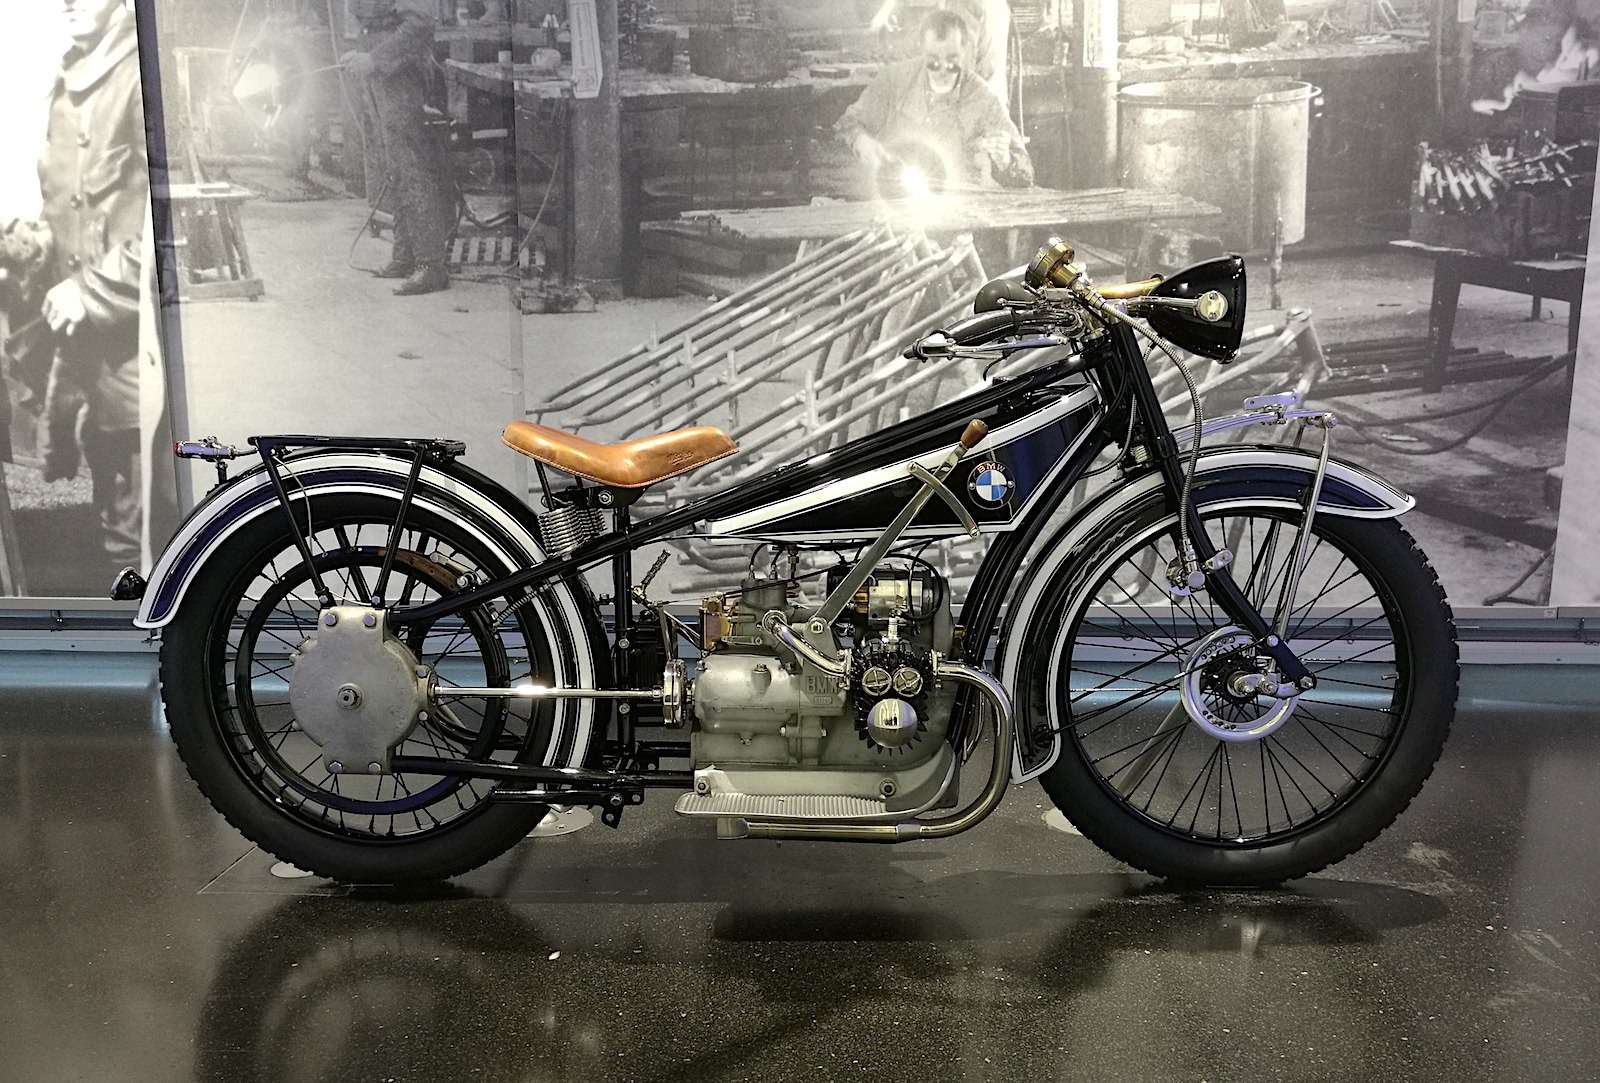 Первый мотоцикл баварской марки — BMW R32 — был выпущен в 1923 году. После Первой мировой Германия не могла выпускать авиационные двигатели, поэтому приступила к производству техники для гражданских целей. Тогда-то инженеру Максу Фрицу и пришла идея сконструировать для своих нужд мотоцикл. Для передачи тяги на заднее колесо использовался необслуживаемый вал, а не привычные цепь или ремень.